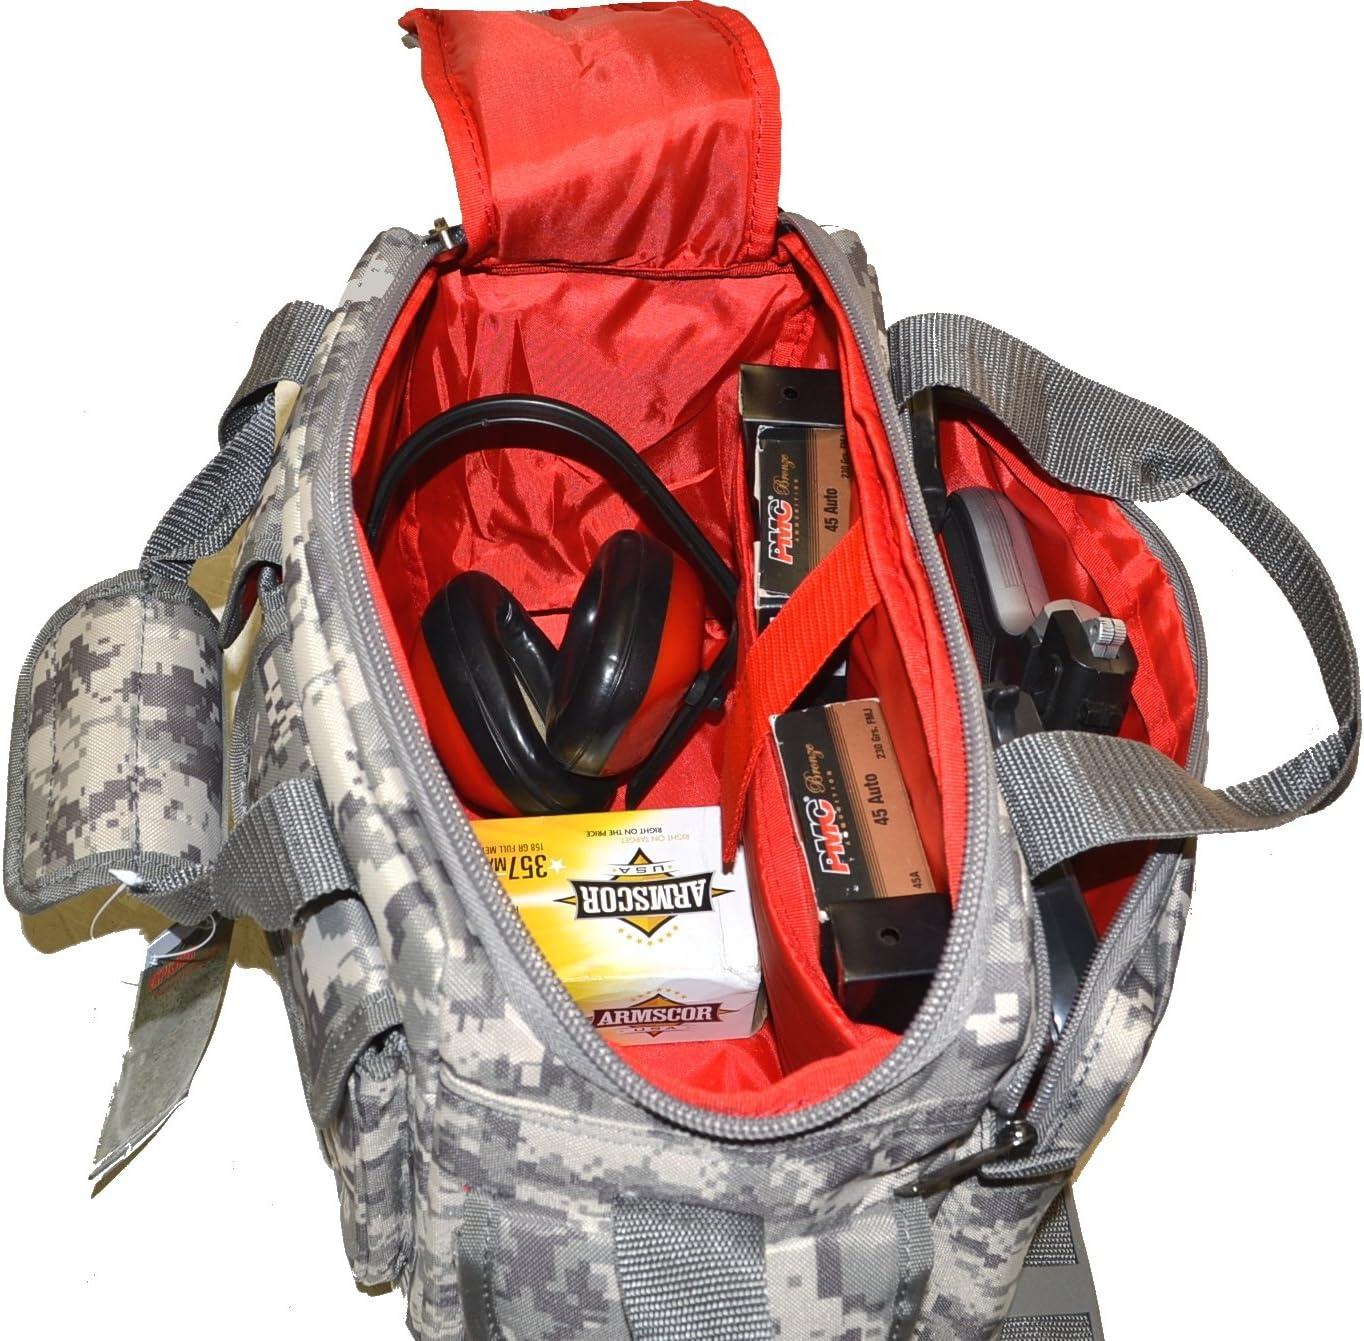 HARDSTONE Tactical 5 Pistol Range Go Bag with Adjustable Shoulder